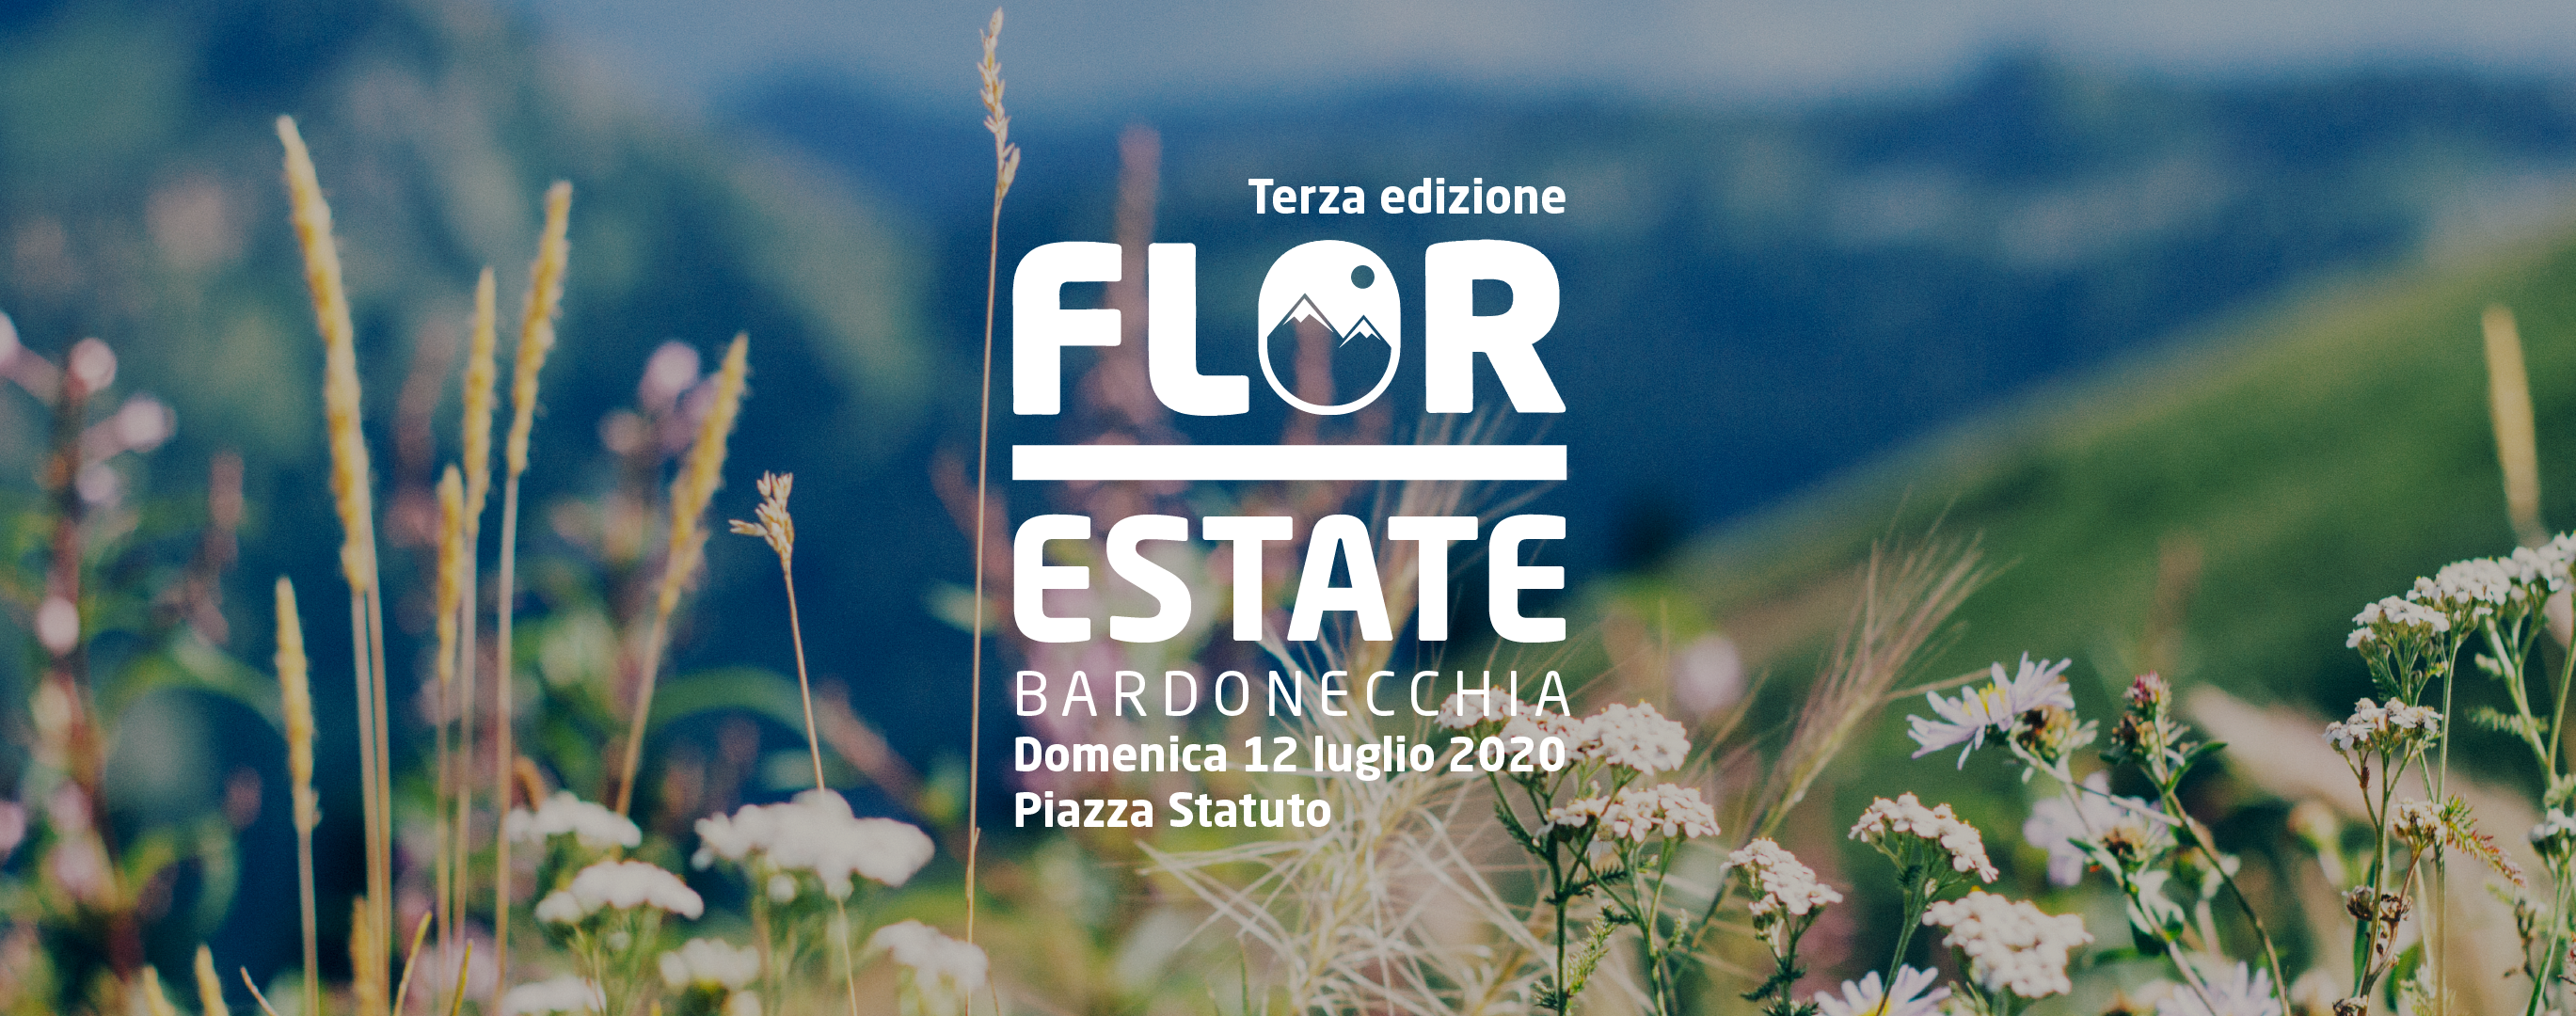 Flor Estate a Bardonecchia 2020 // 12 luglio // Piazza Statuto